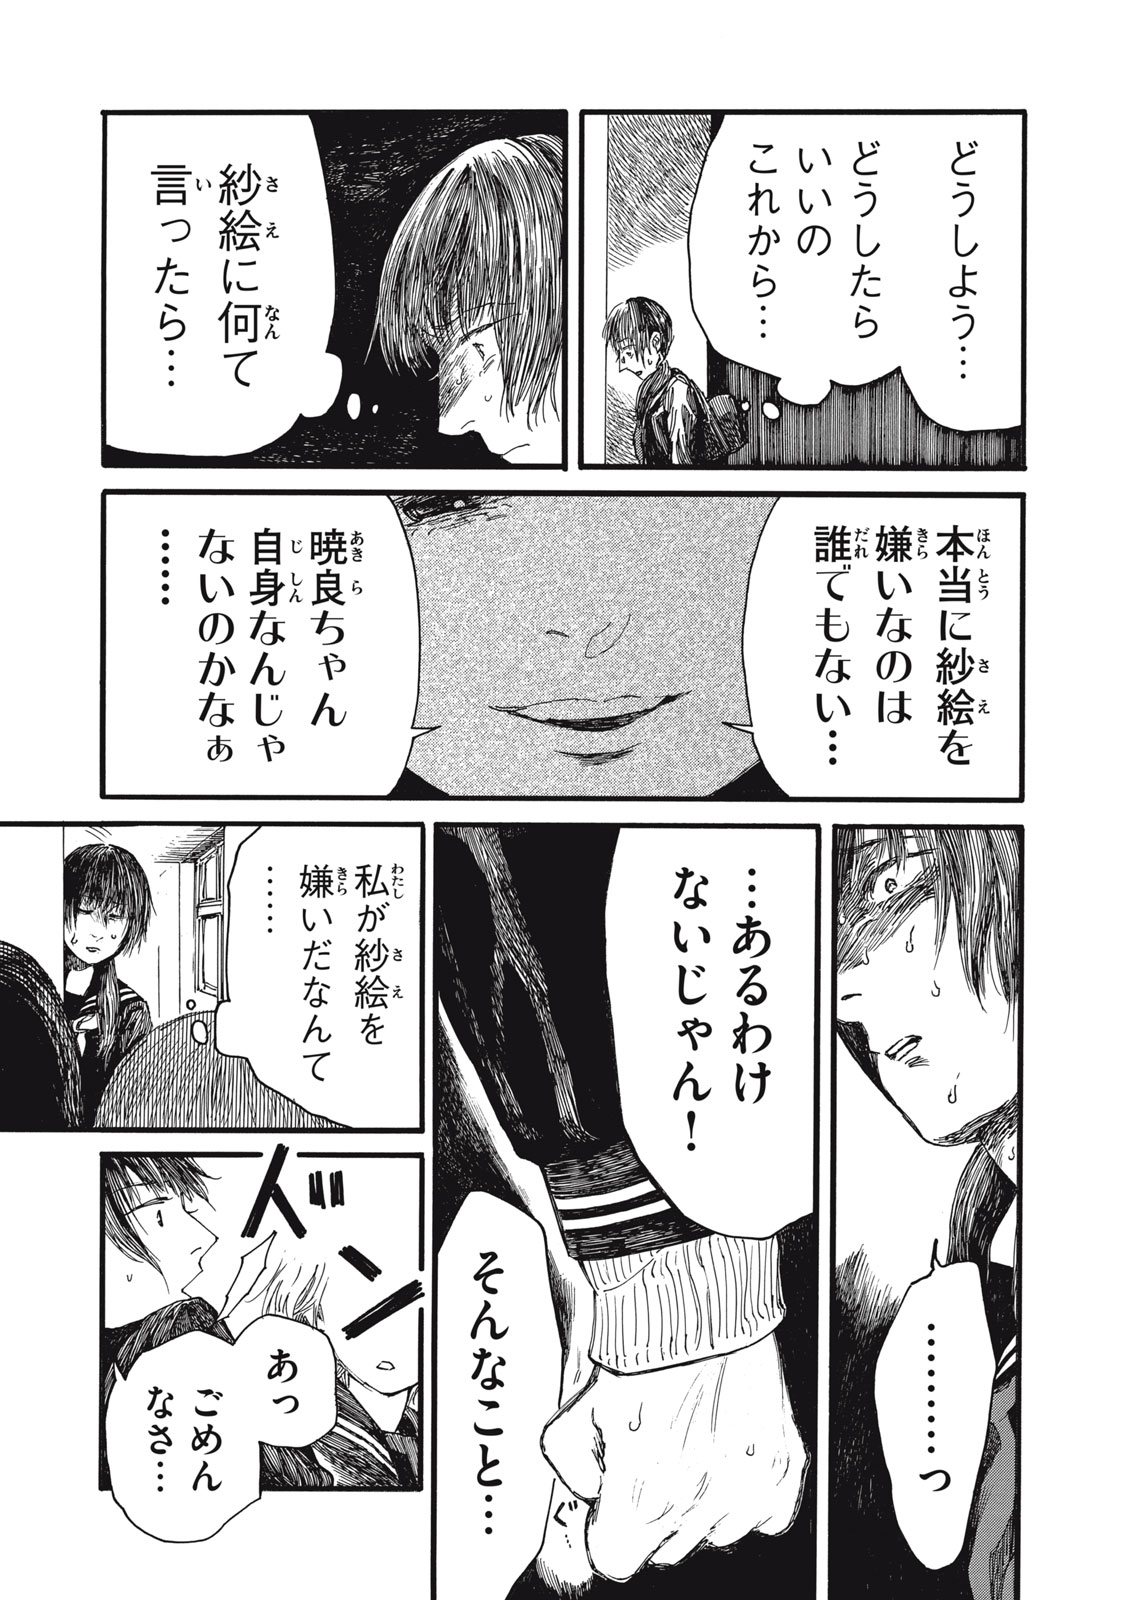 Watashi no Hara no Naka no Bakemono - Chapter 37 - Page 6